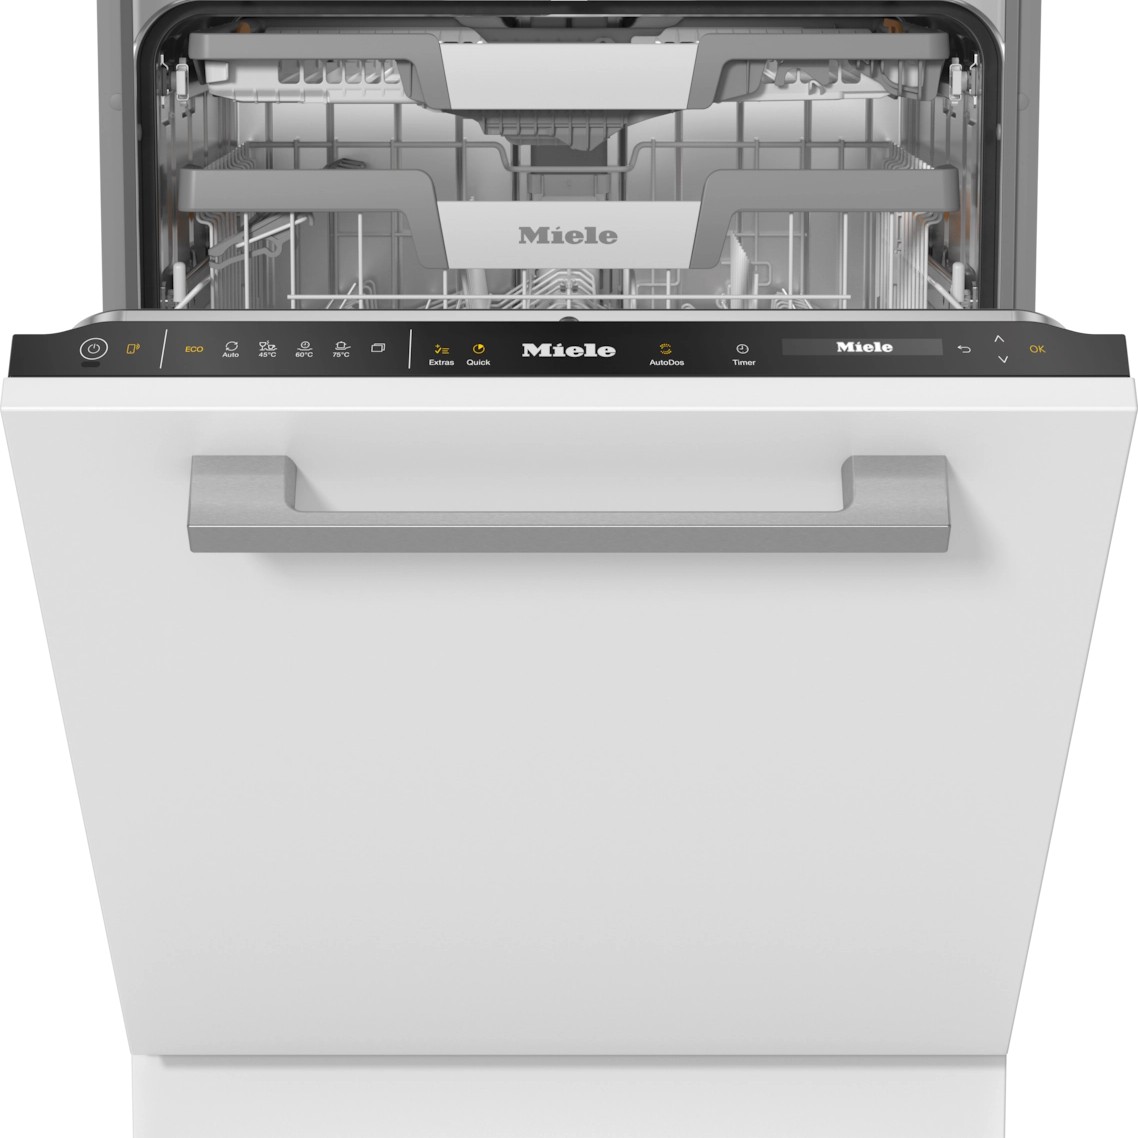 Встраиваемая посудомоечная машина Miele G 7650 SCVi посудомоечная машина miele g 5000 u active серебристый